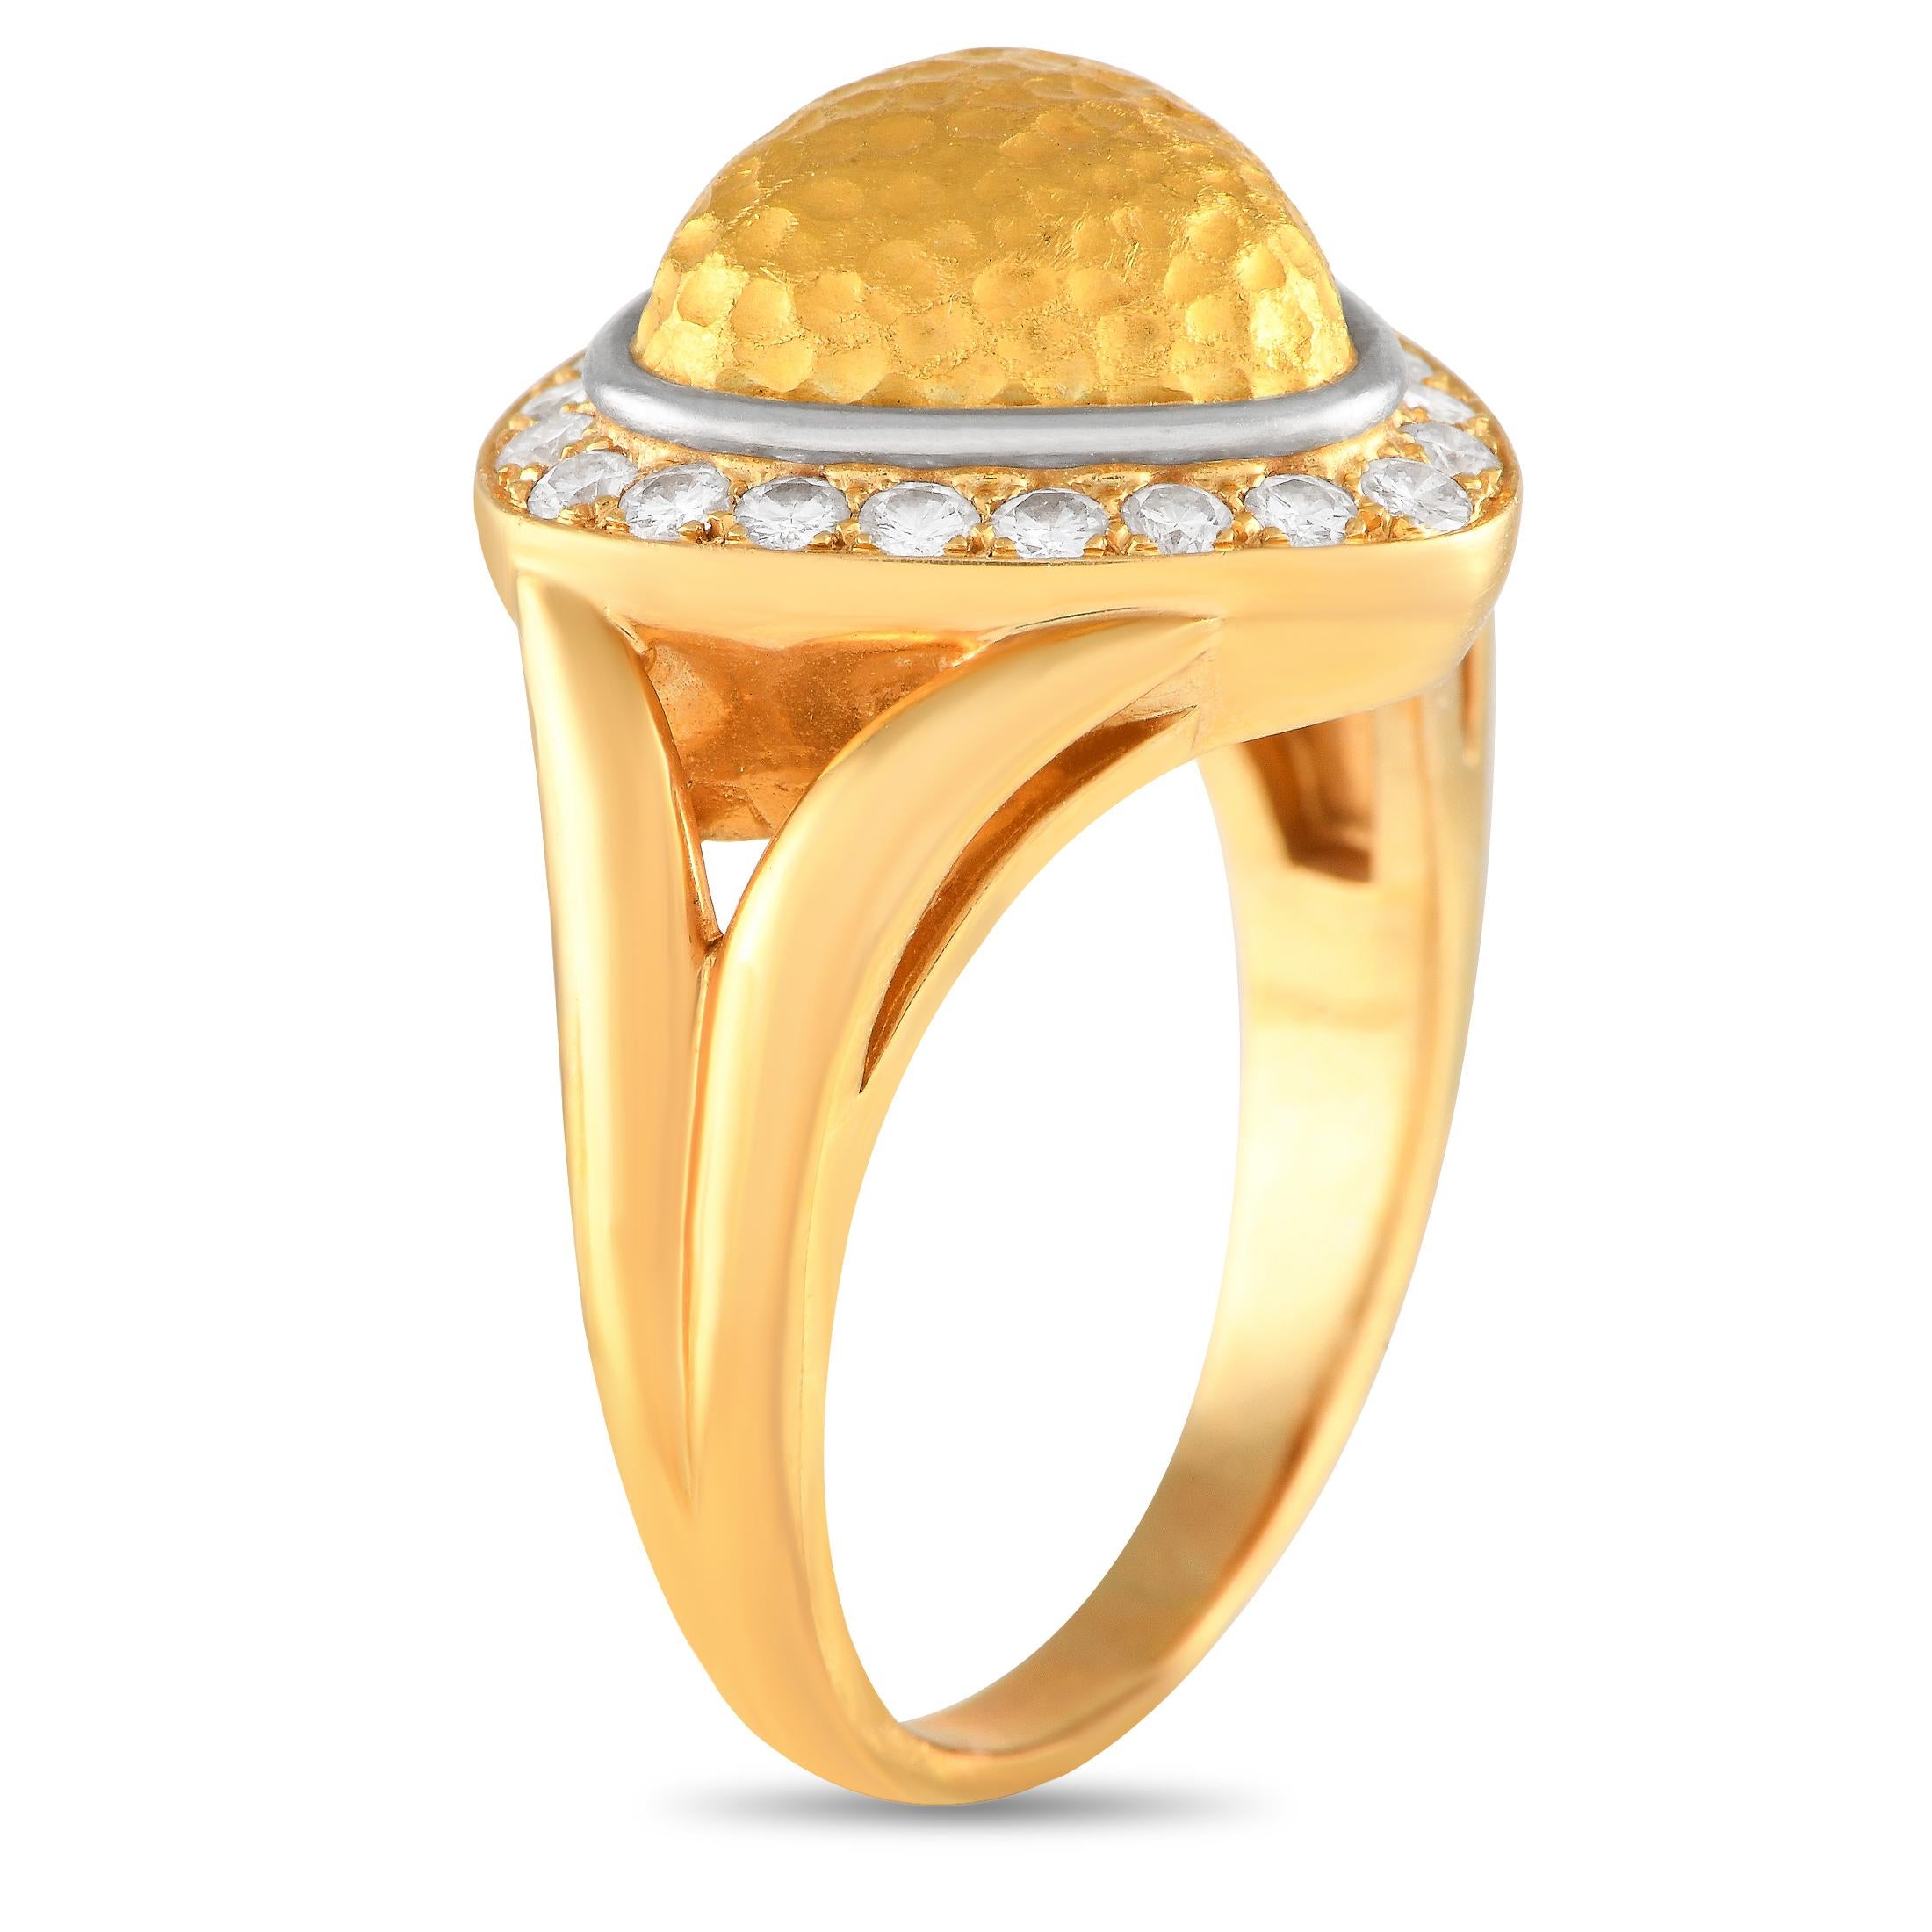 Von Maison Chaumet kommt dieser Ring aus 18 Karat Gelbgold mit unbestreitbarem Retro-Charme. Dieser Cocktailring hat einen geschwungenen, geteilten Schaft, der mit einem gewölbten, abgerundeten, dreieckigen Goldnugget mit gehämmerter Oberfläche